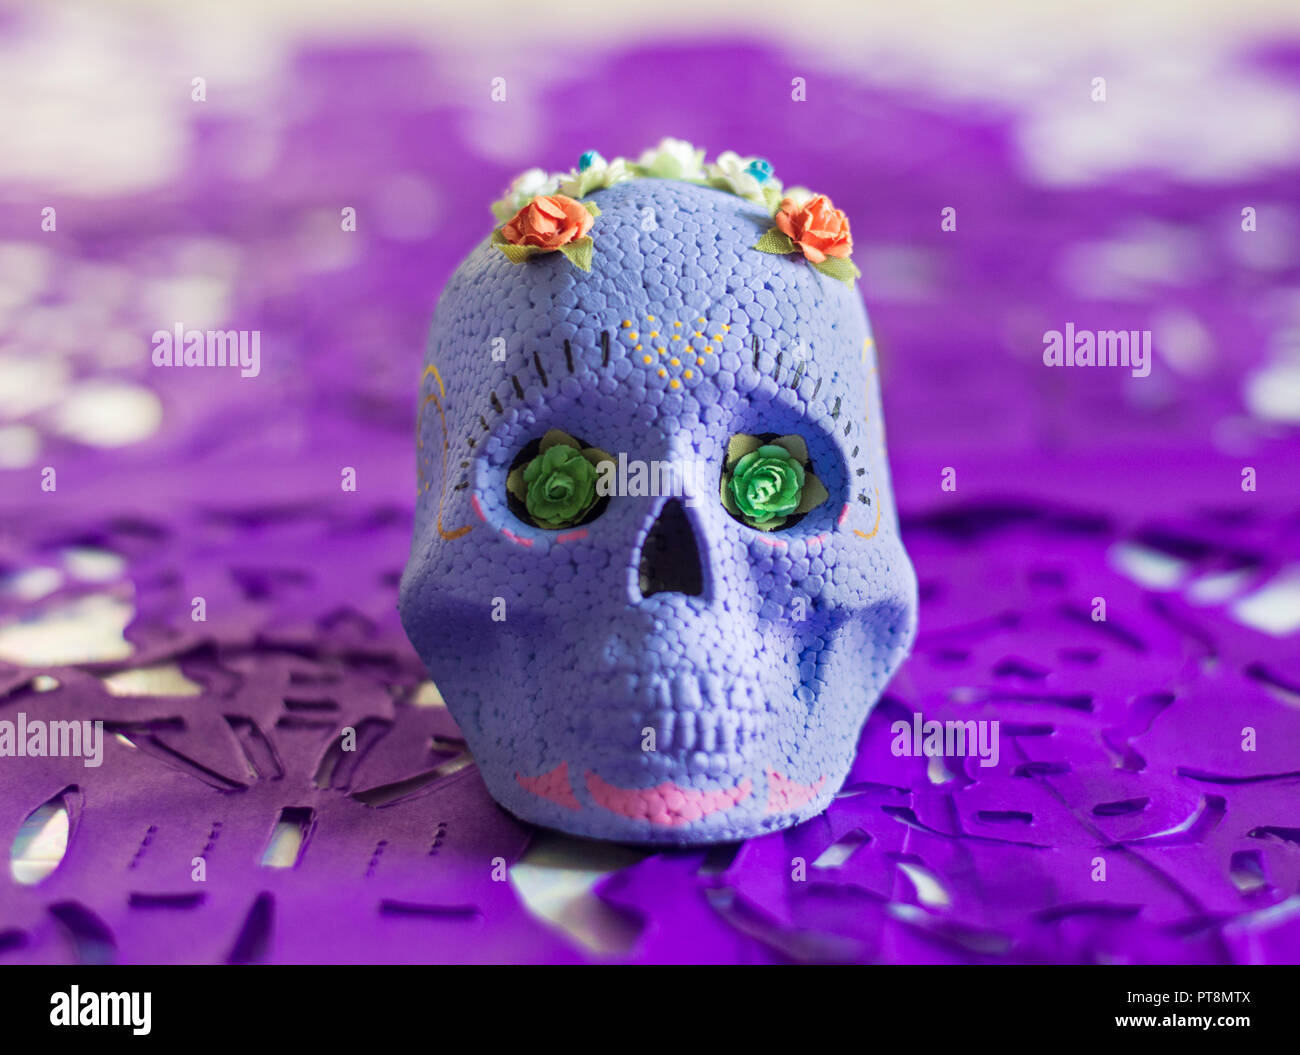 Viola il giorno dei morti il teschio di zucchero, con fiori sulla parte superiore e Viola papel picado (carta tessuto ritagli) come decorazione. Foto Stock